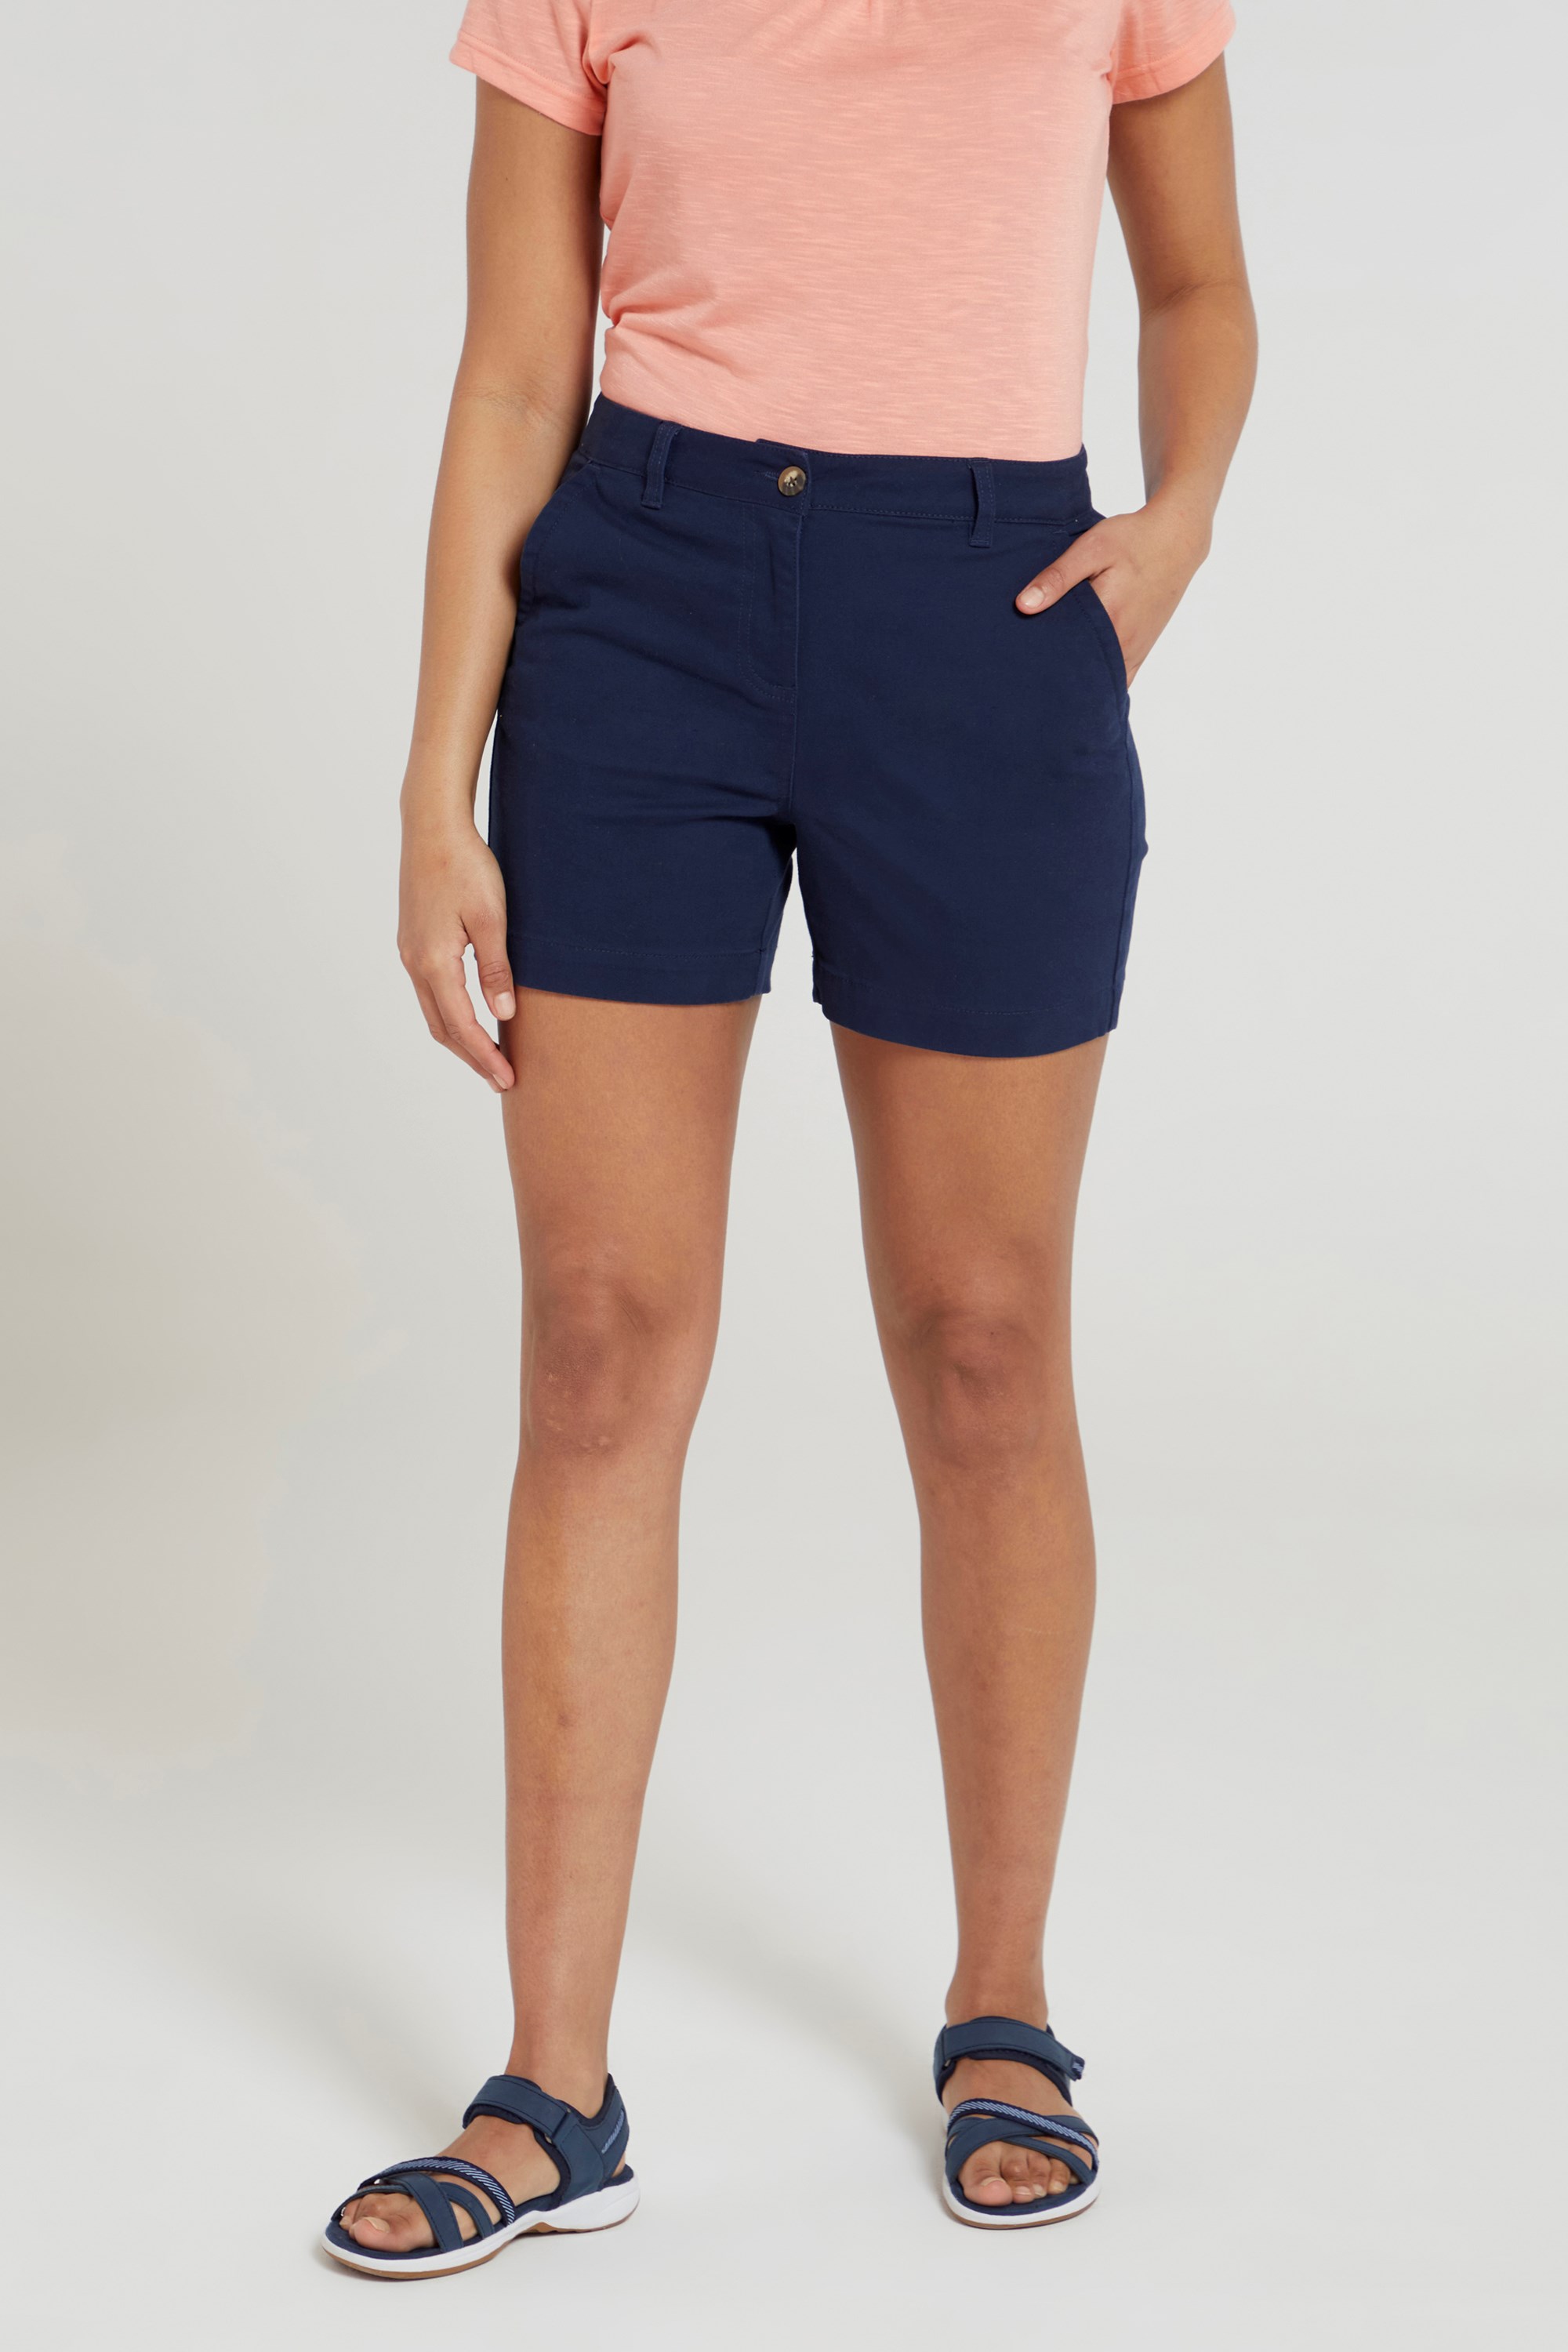 Bay Womens Organic Chino Shorts - Navy